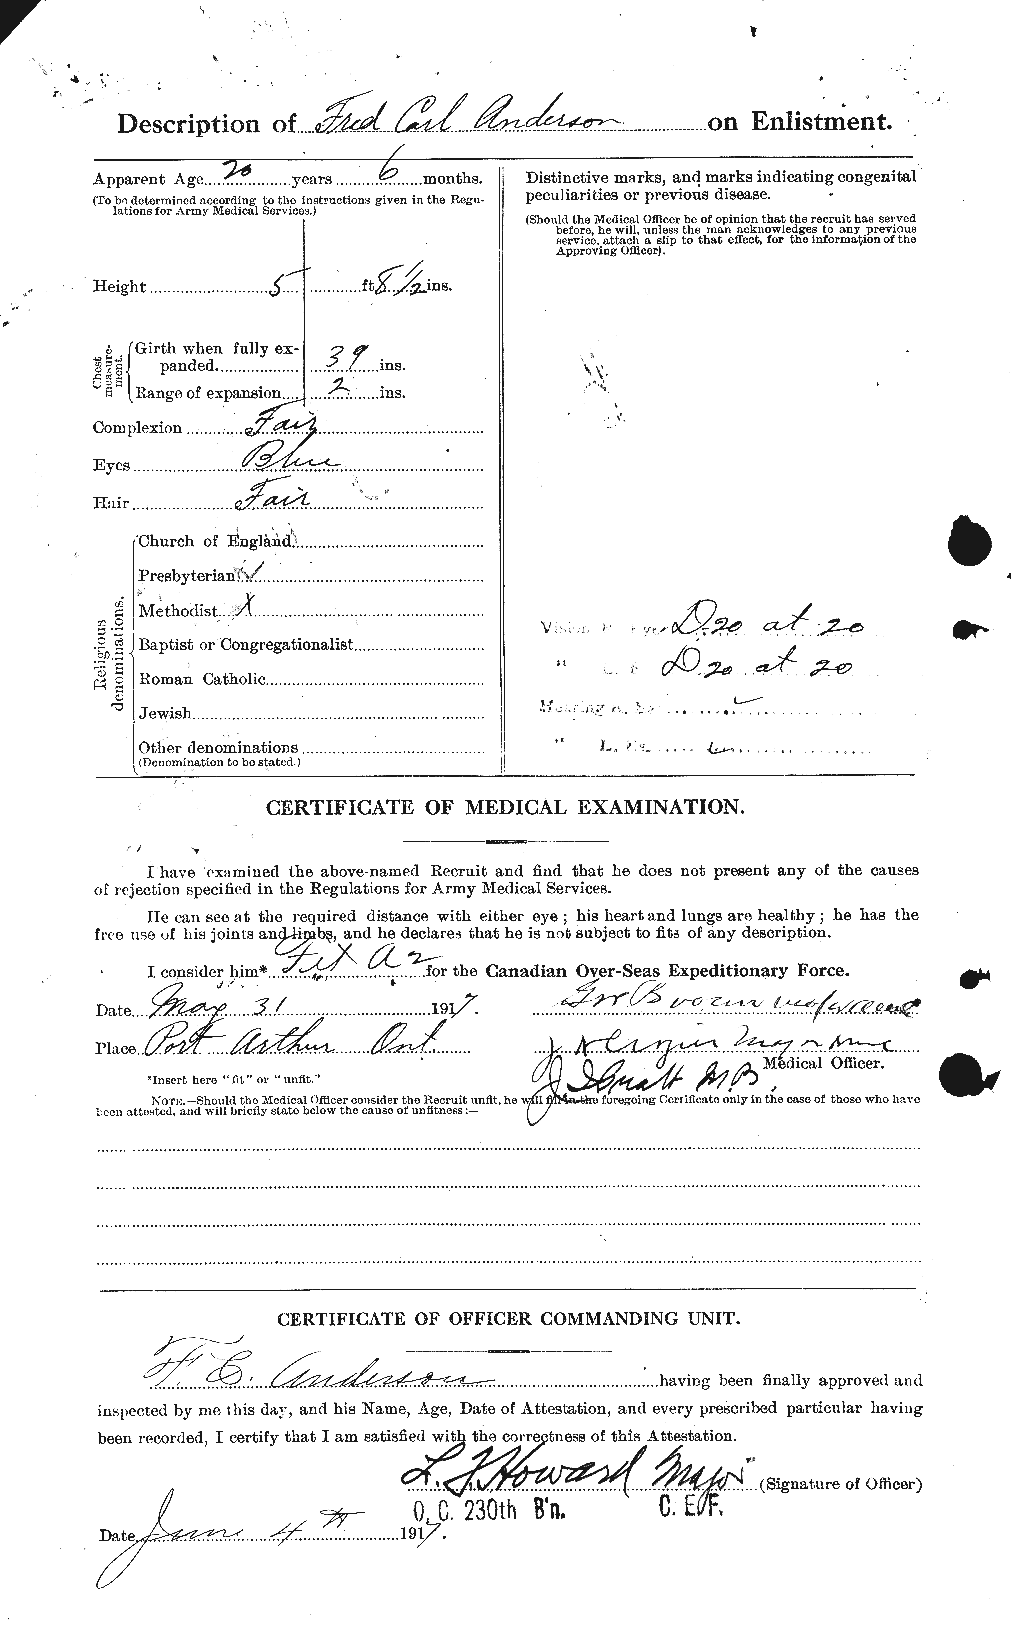 Dossiers du Personnel de la Première Guerre mondiale - CEC 209836b